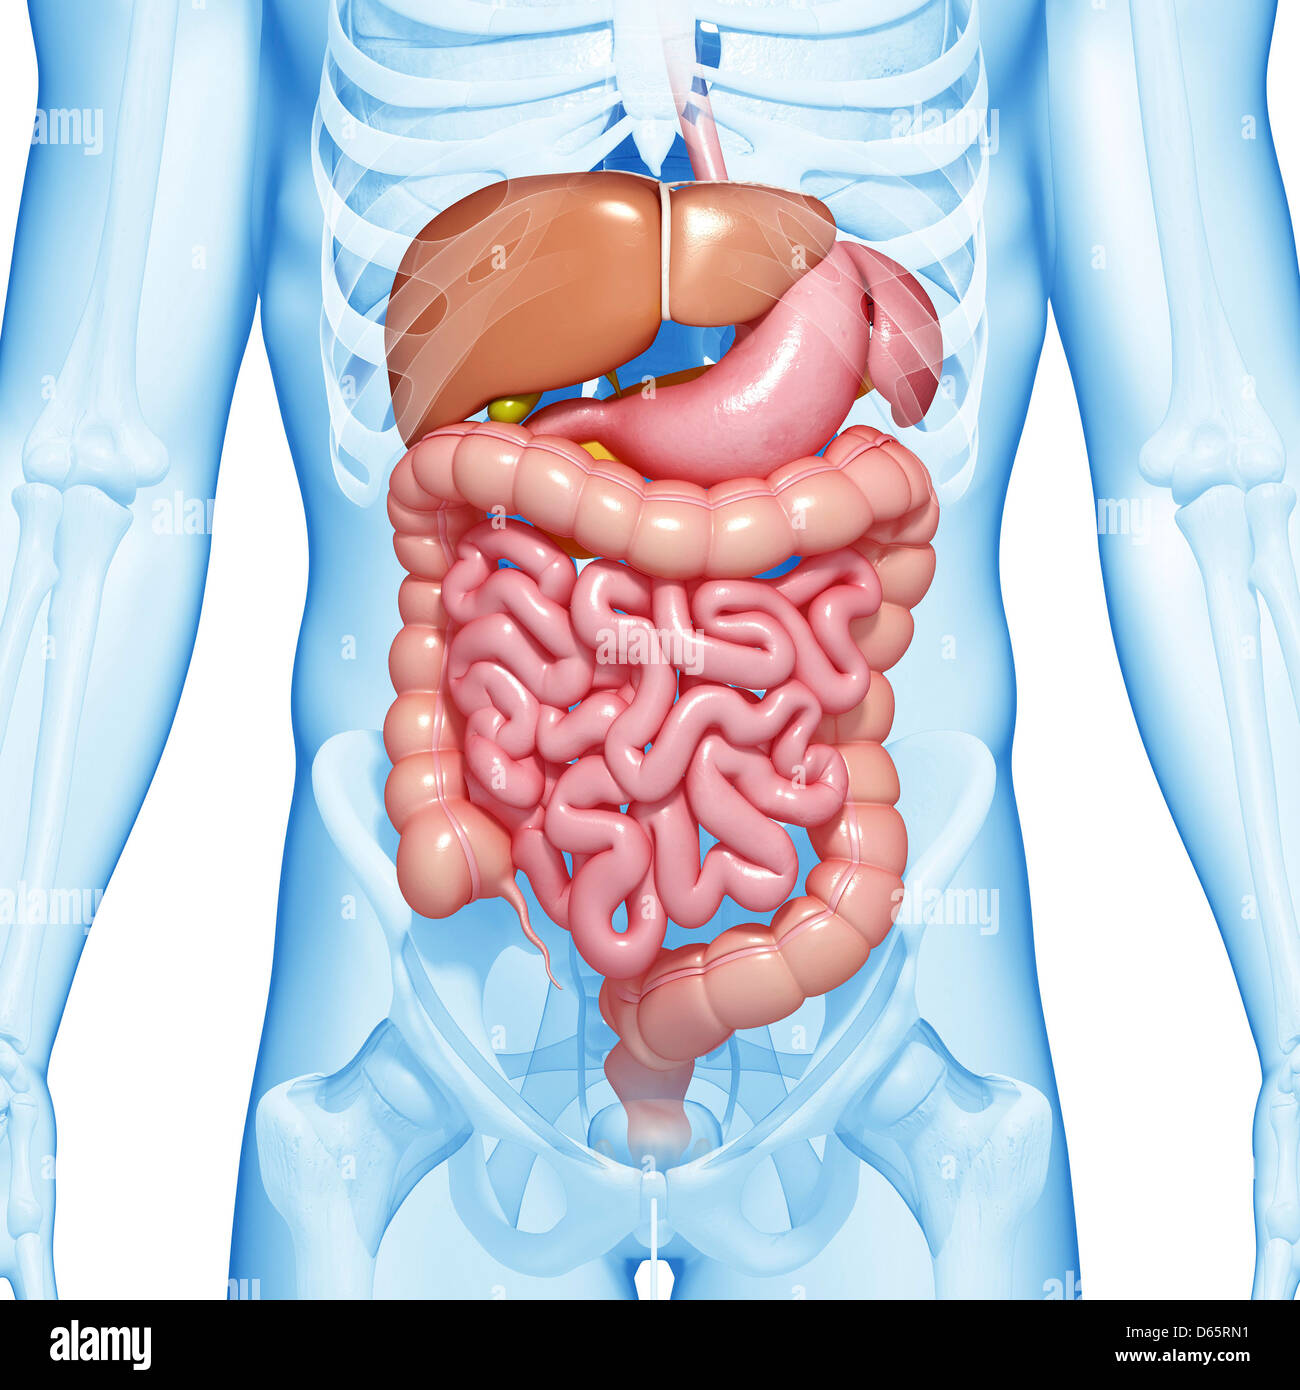 Тонкий кишечник и печень. Анатомия брюшной полости человека 3d. Кишечник мужчины анатомия брюшной полости. Расположение кишечника в организме. Живот анатомия кишечника.